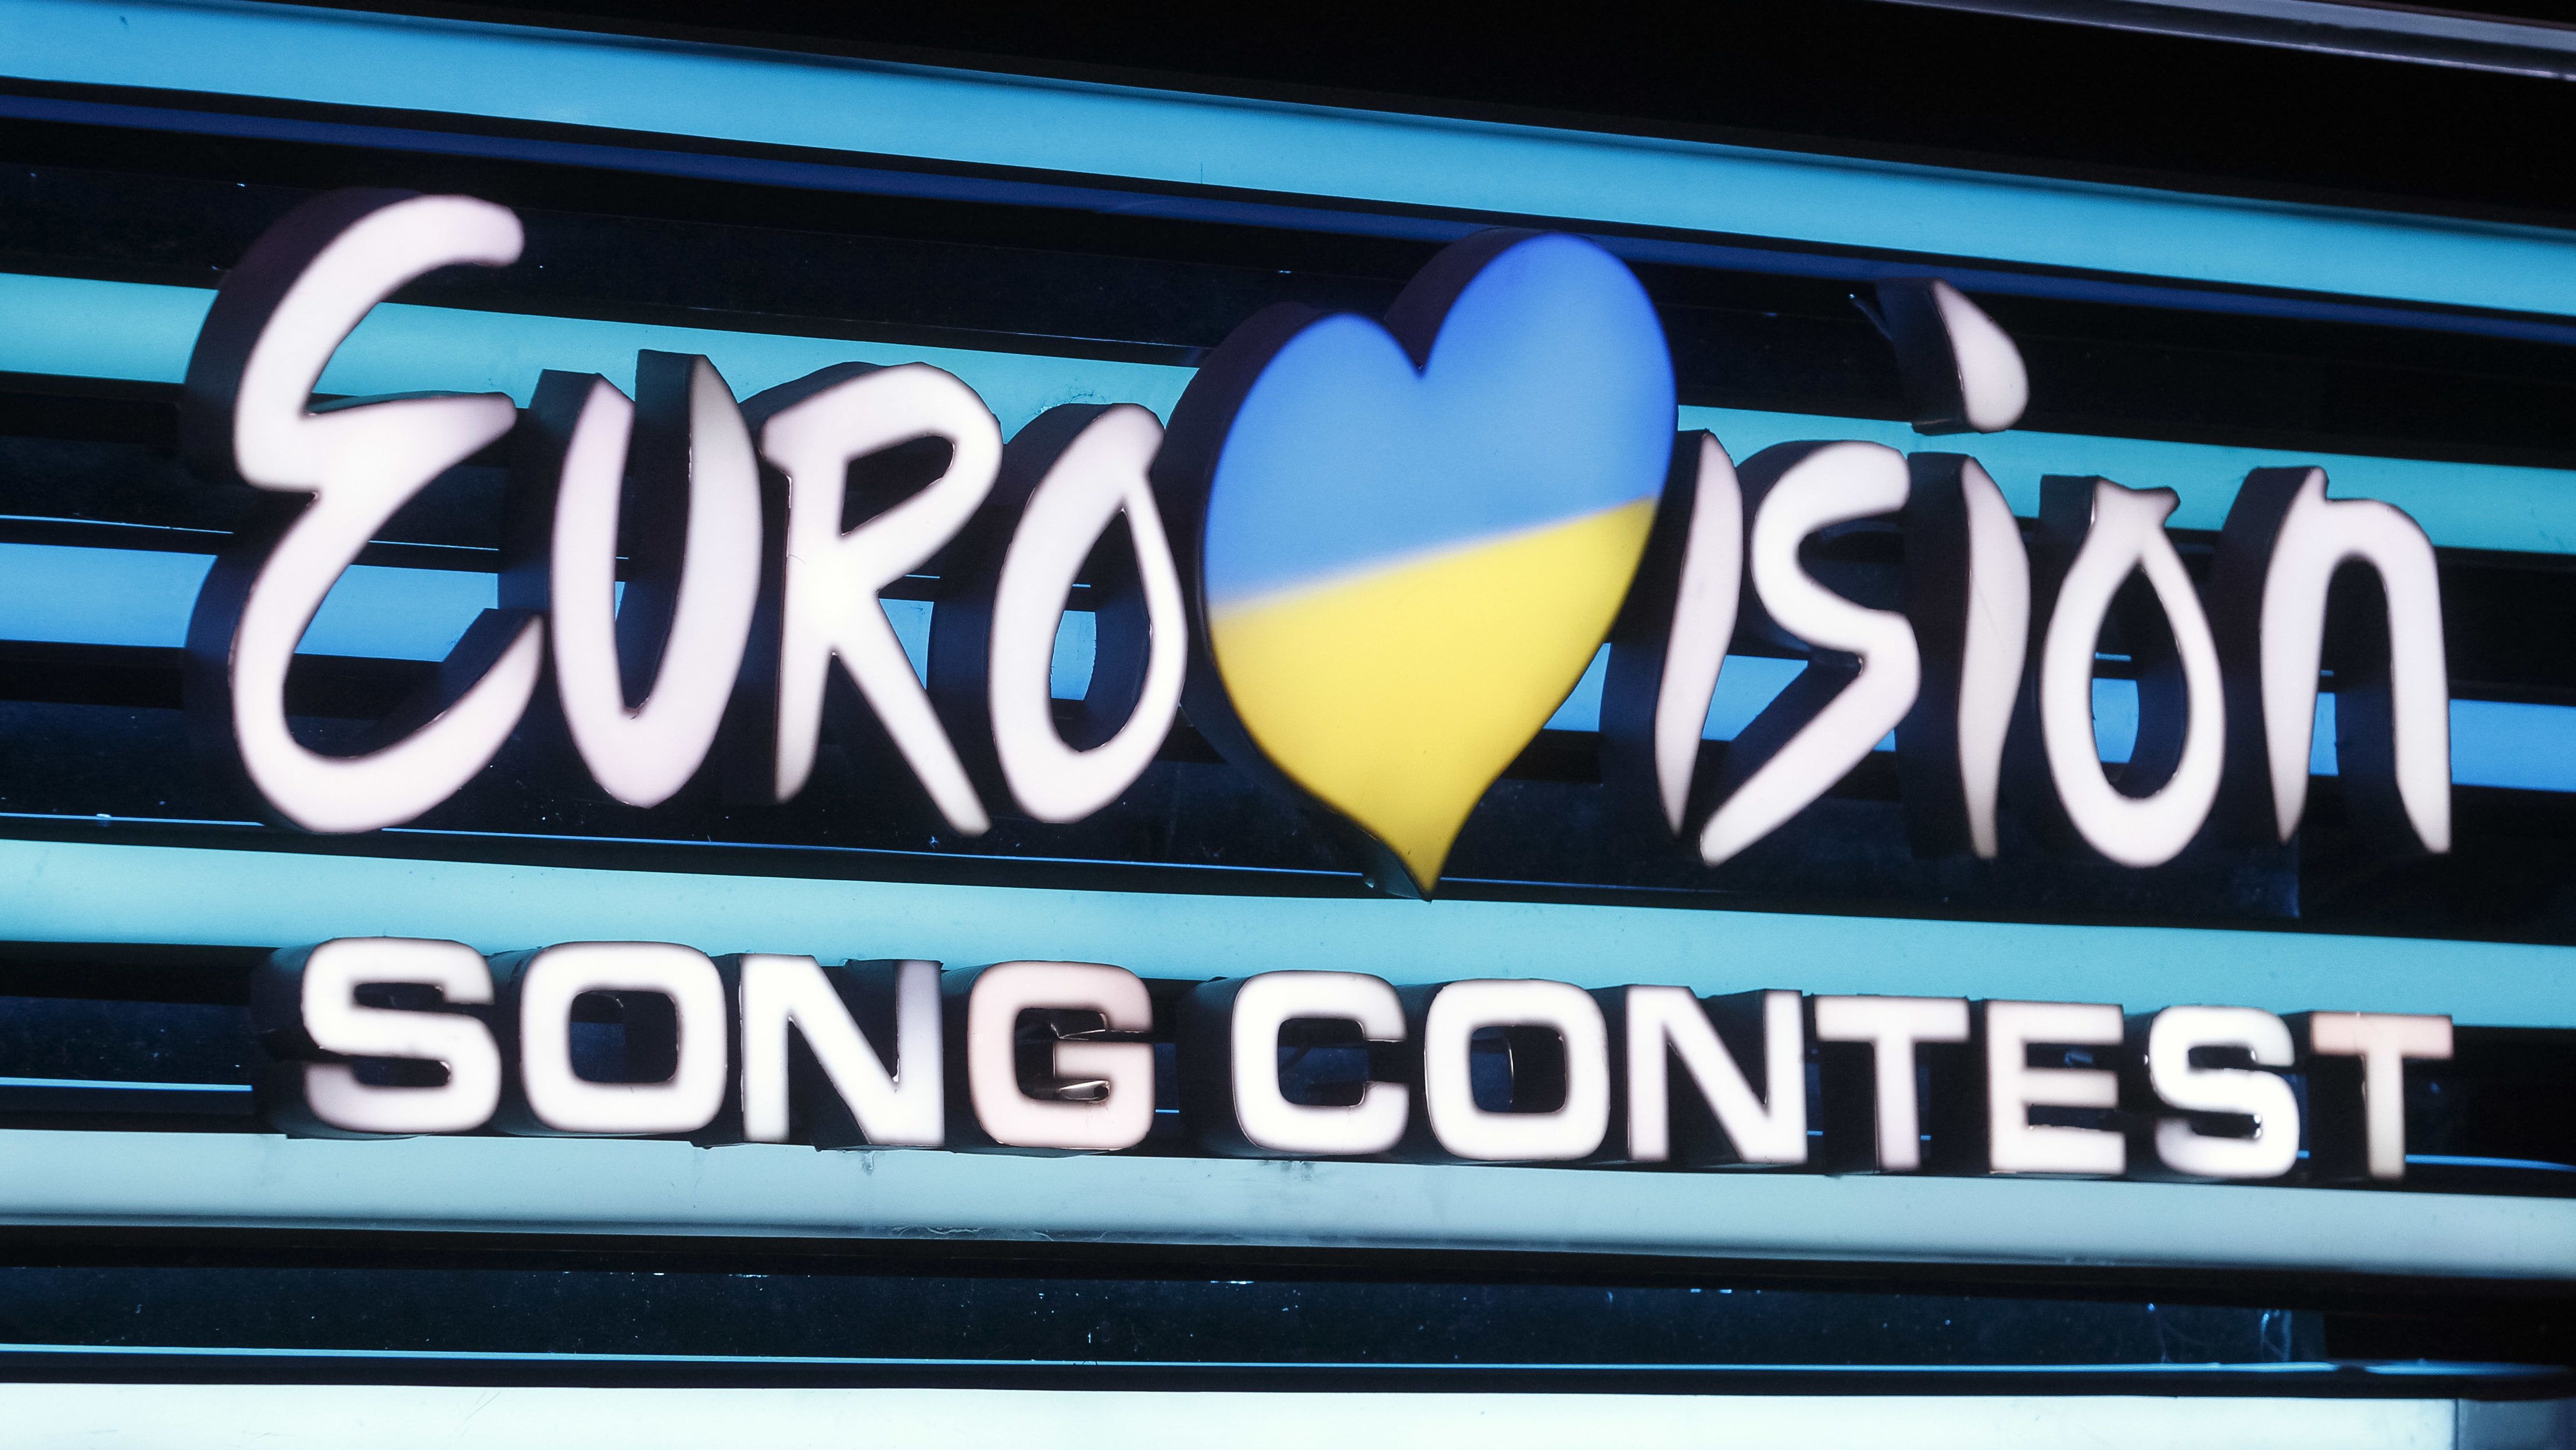 Koronavírus: az Eurovíziós Dalfesztivál szervezői már keresik a megoldásokat